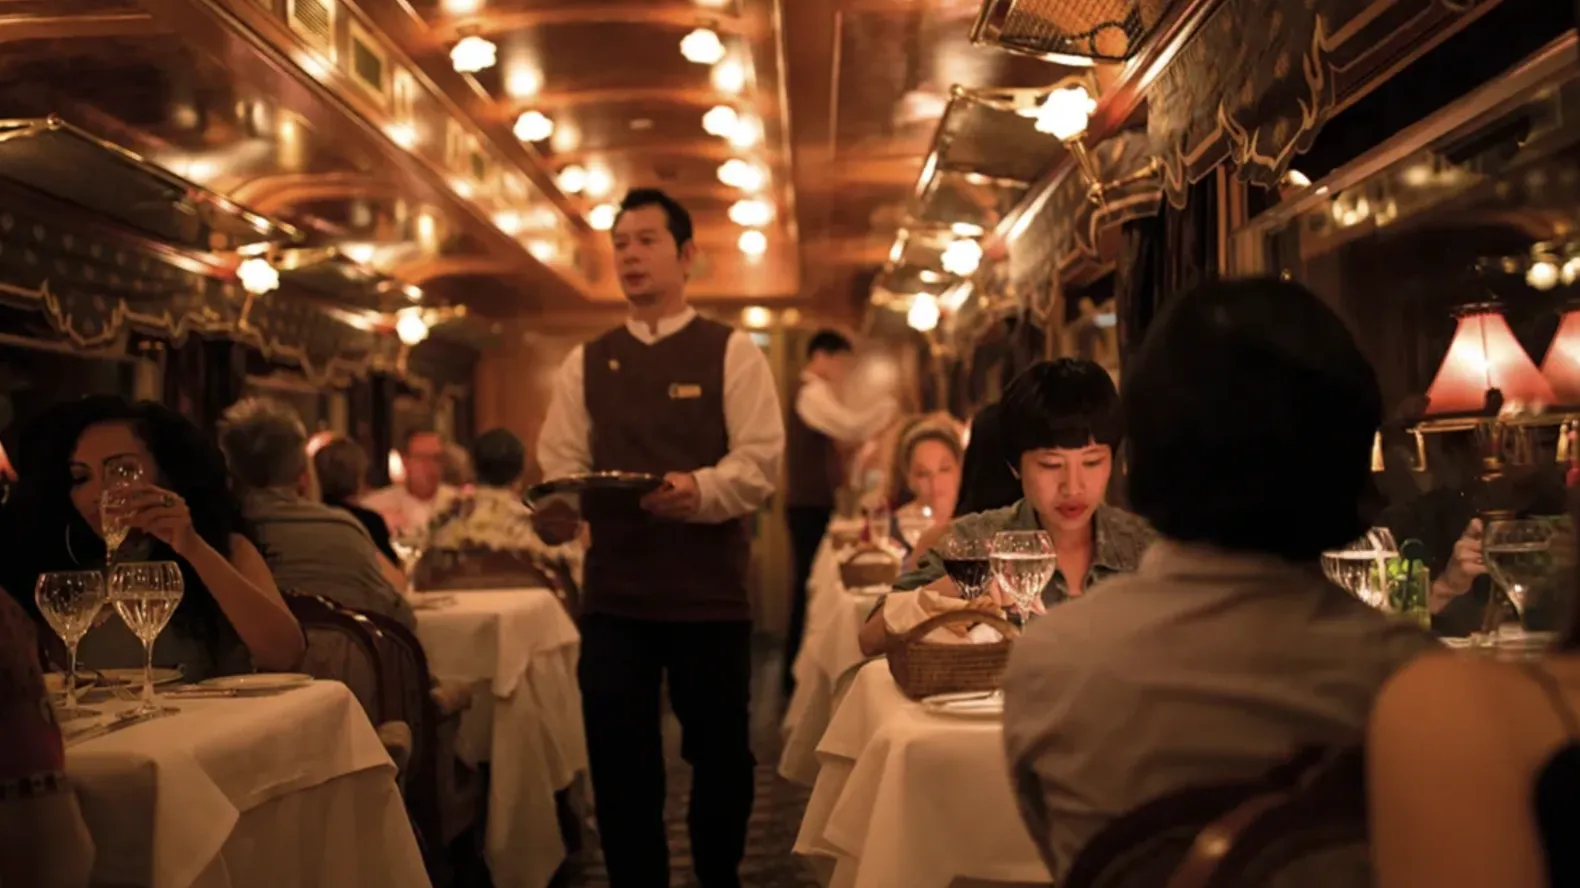 У поїзді є два вагони-ресторани, у кожному з яких подають вишукану кухню